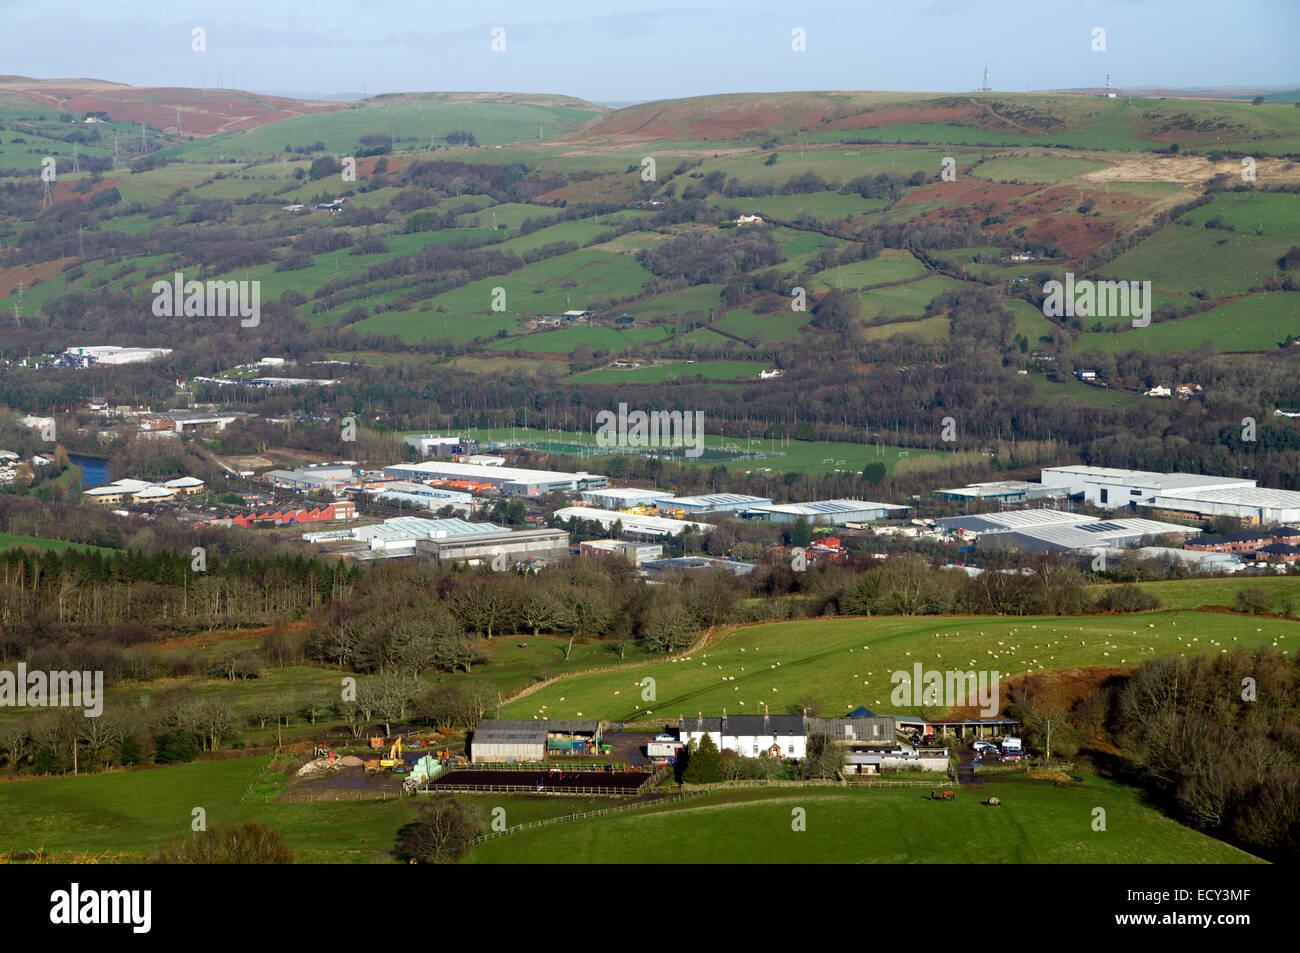 Trefforest Gewerbegebiet von Garth Mountain, Taffs gut, South Wales Valleys, Wales, UK. Stockfoto